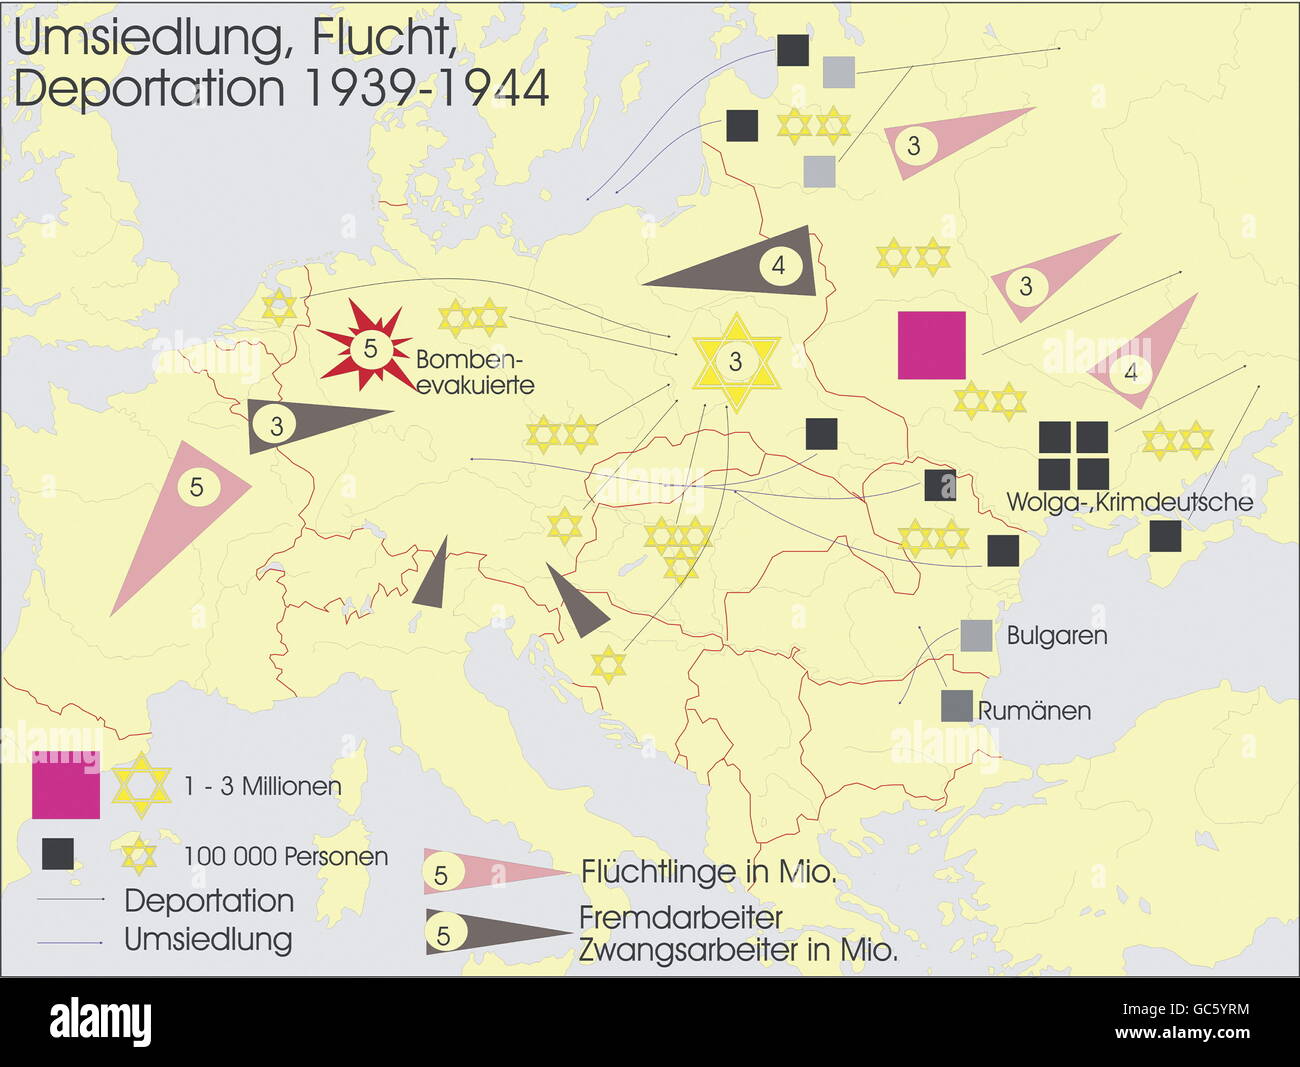 Cartografia, mappe storiche, tempi moderni, reinsediamento, volo e deportazione, 1939 - 1944, diritti aggiuntivi-clearences-non disponibile Foto Stock